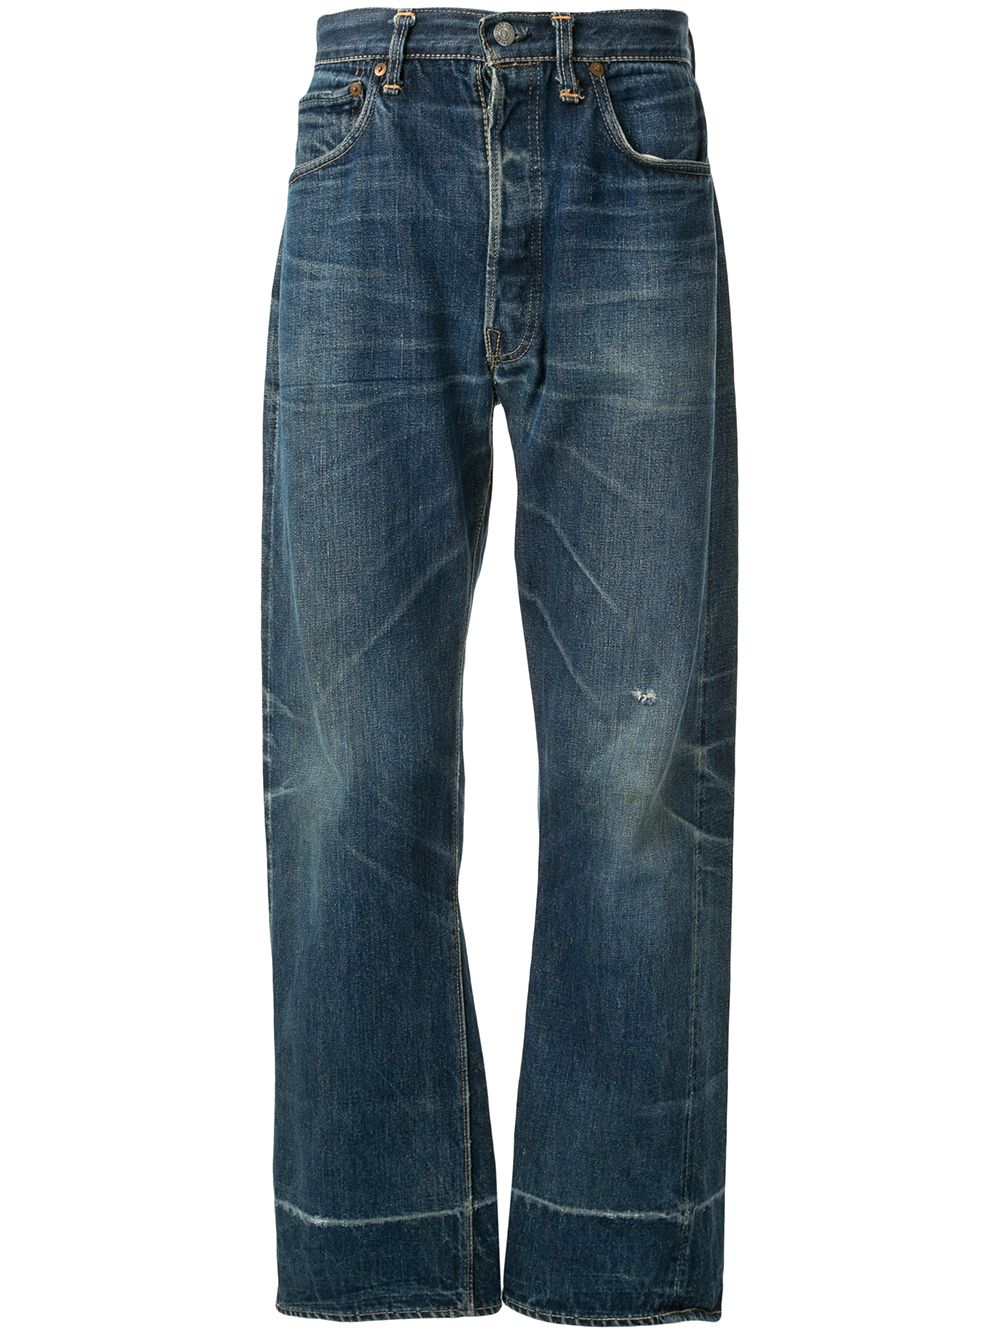 фото Fake alpha x levi's vintage джинсы levi's 501 1950-х годов